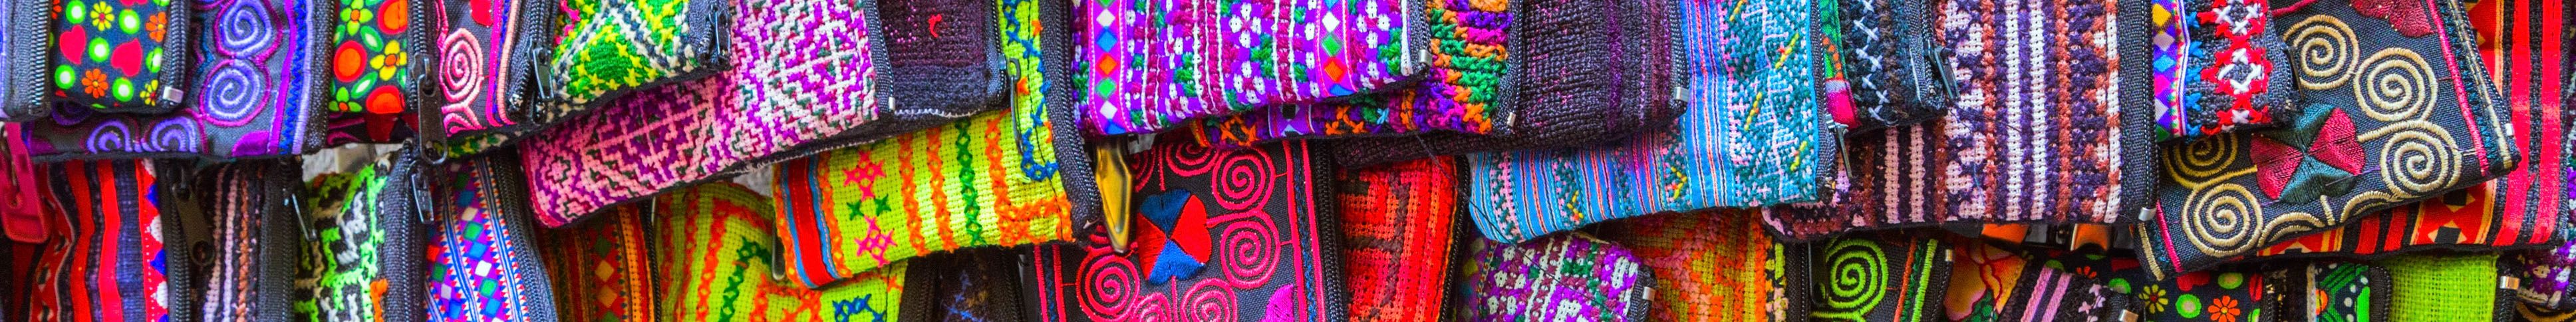 Mexico woven fabric 